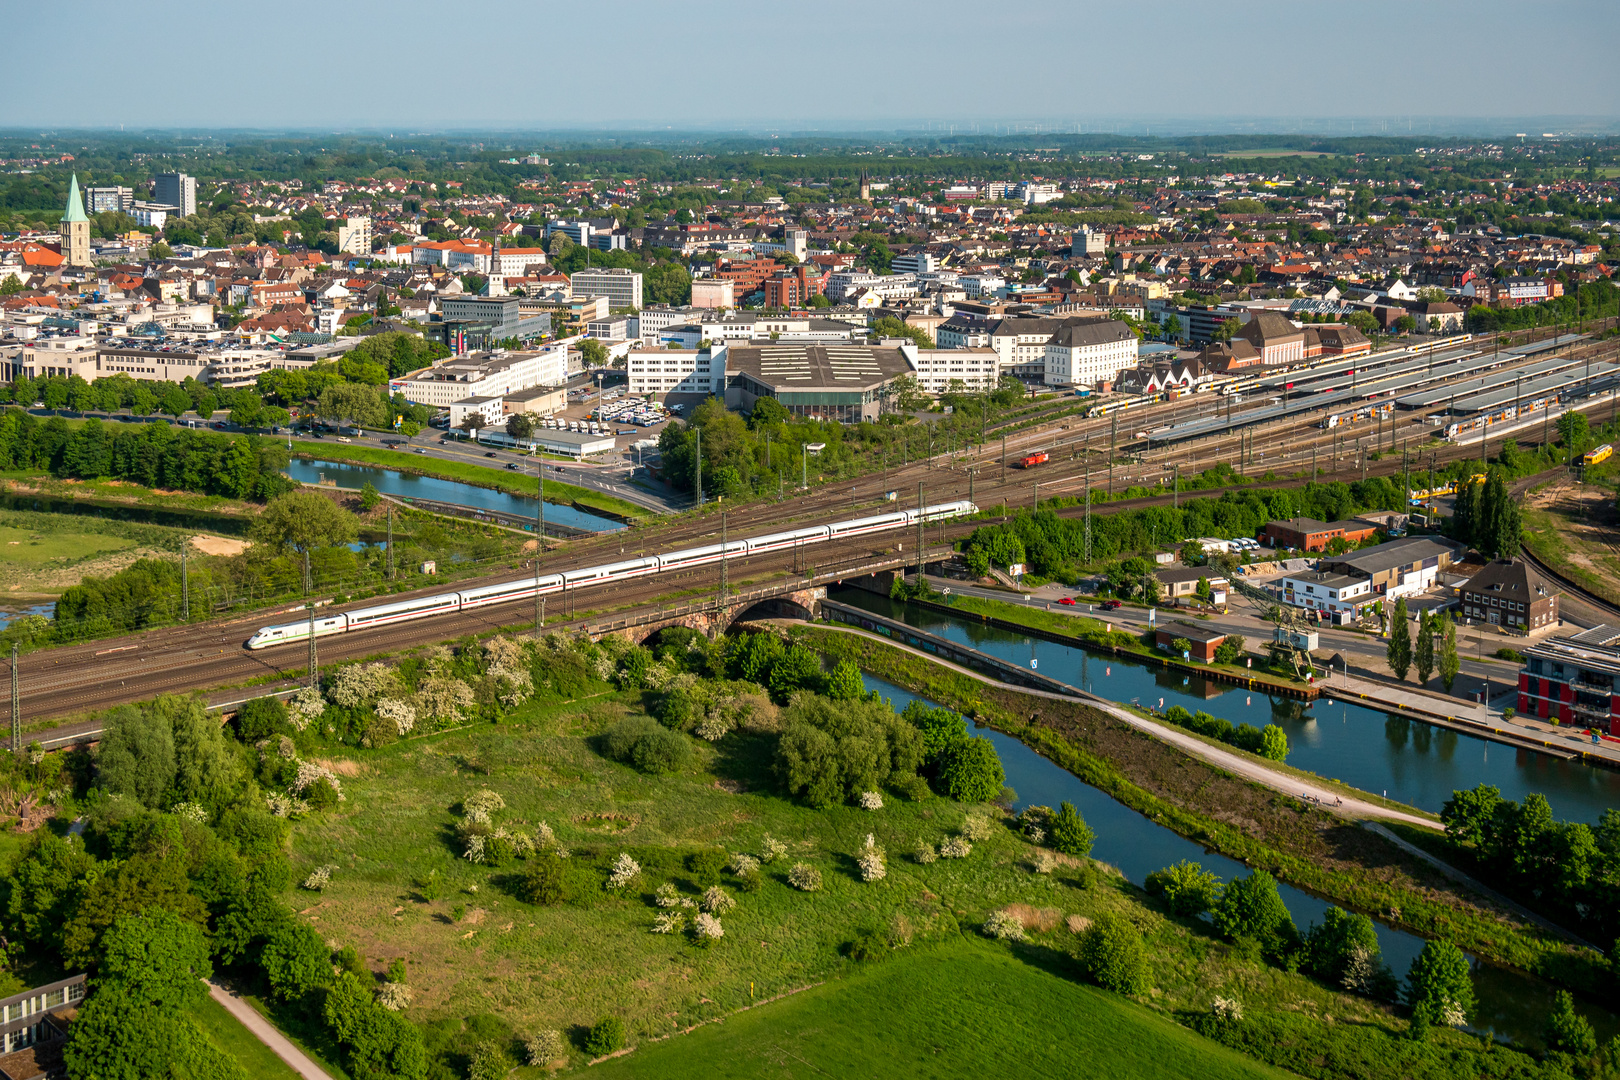 Luftbild der grünen Innenstadt von Hamm Westfalen